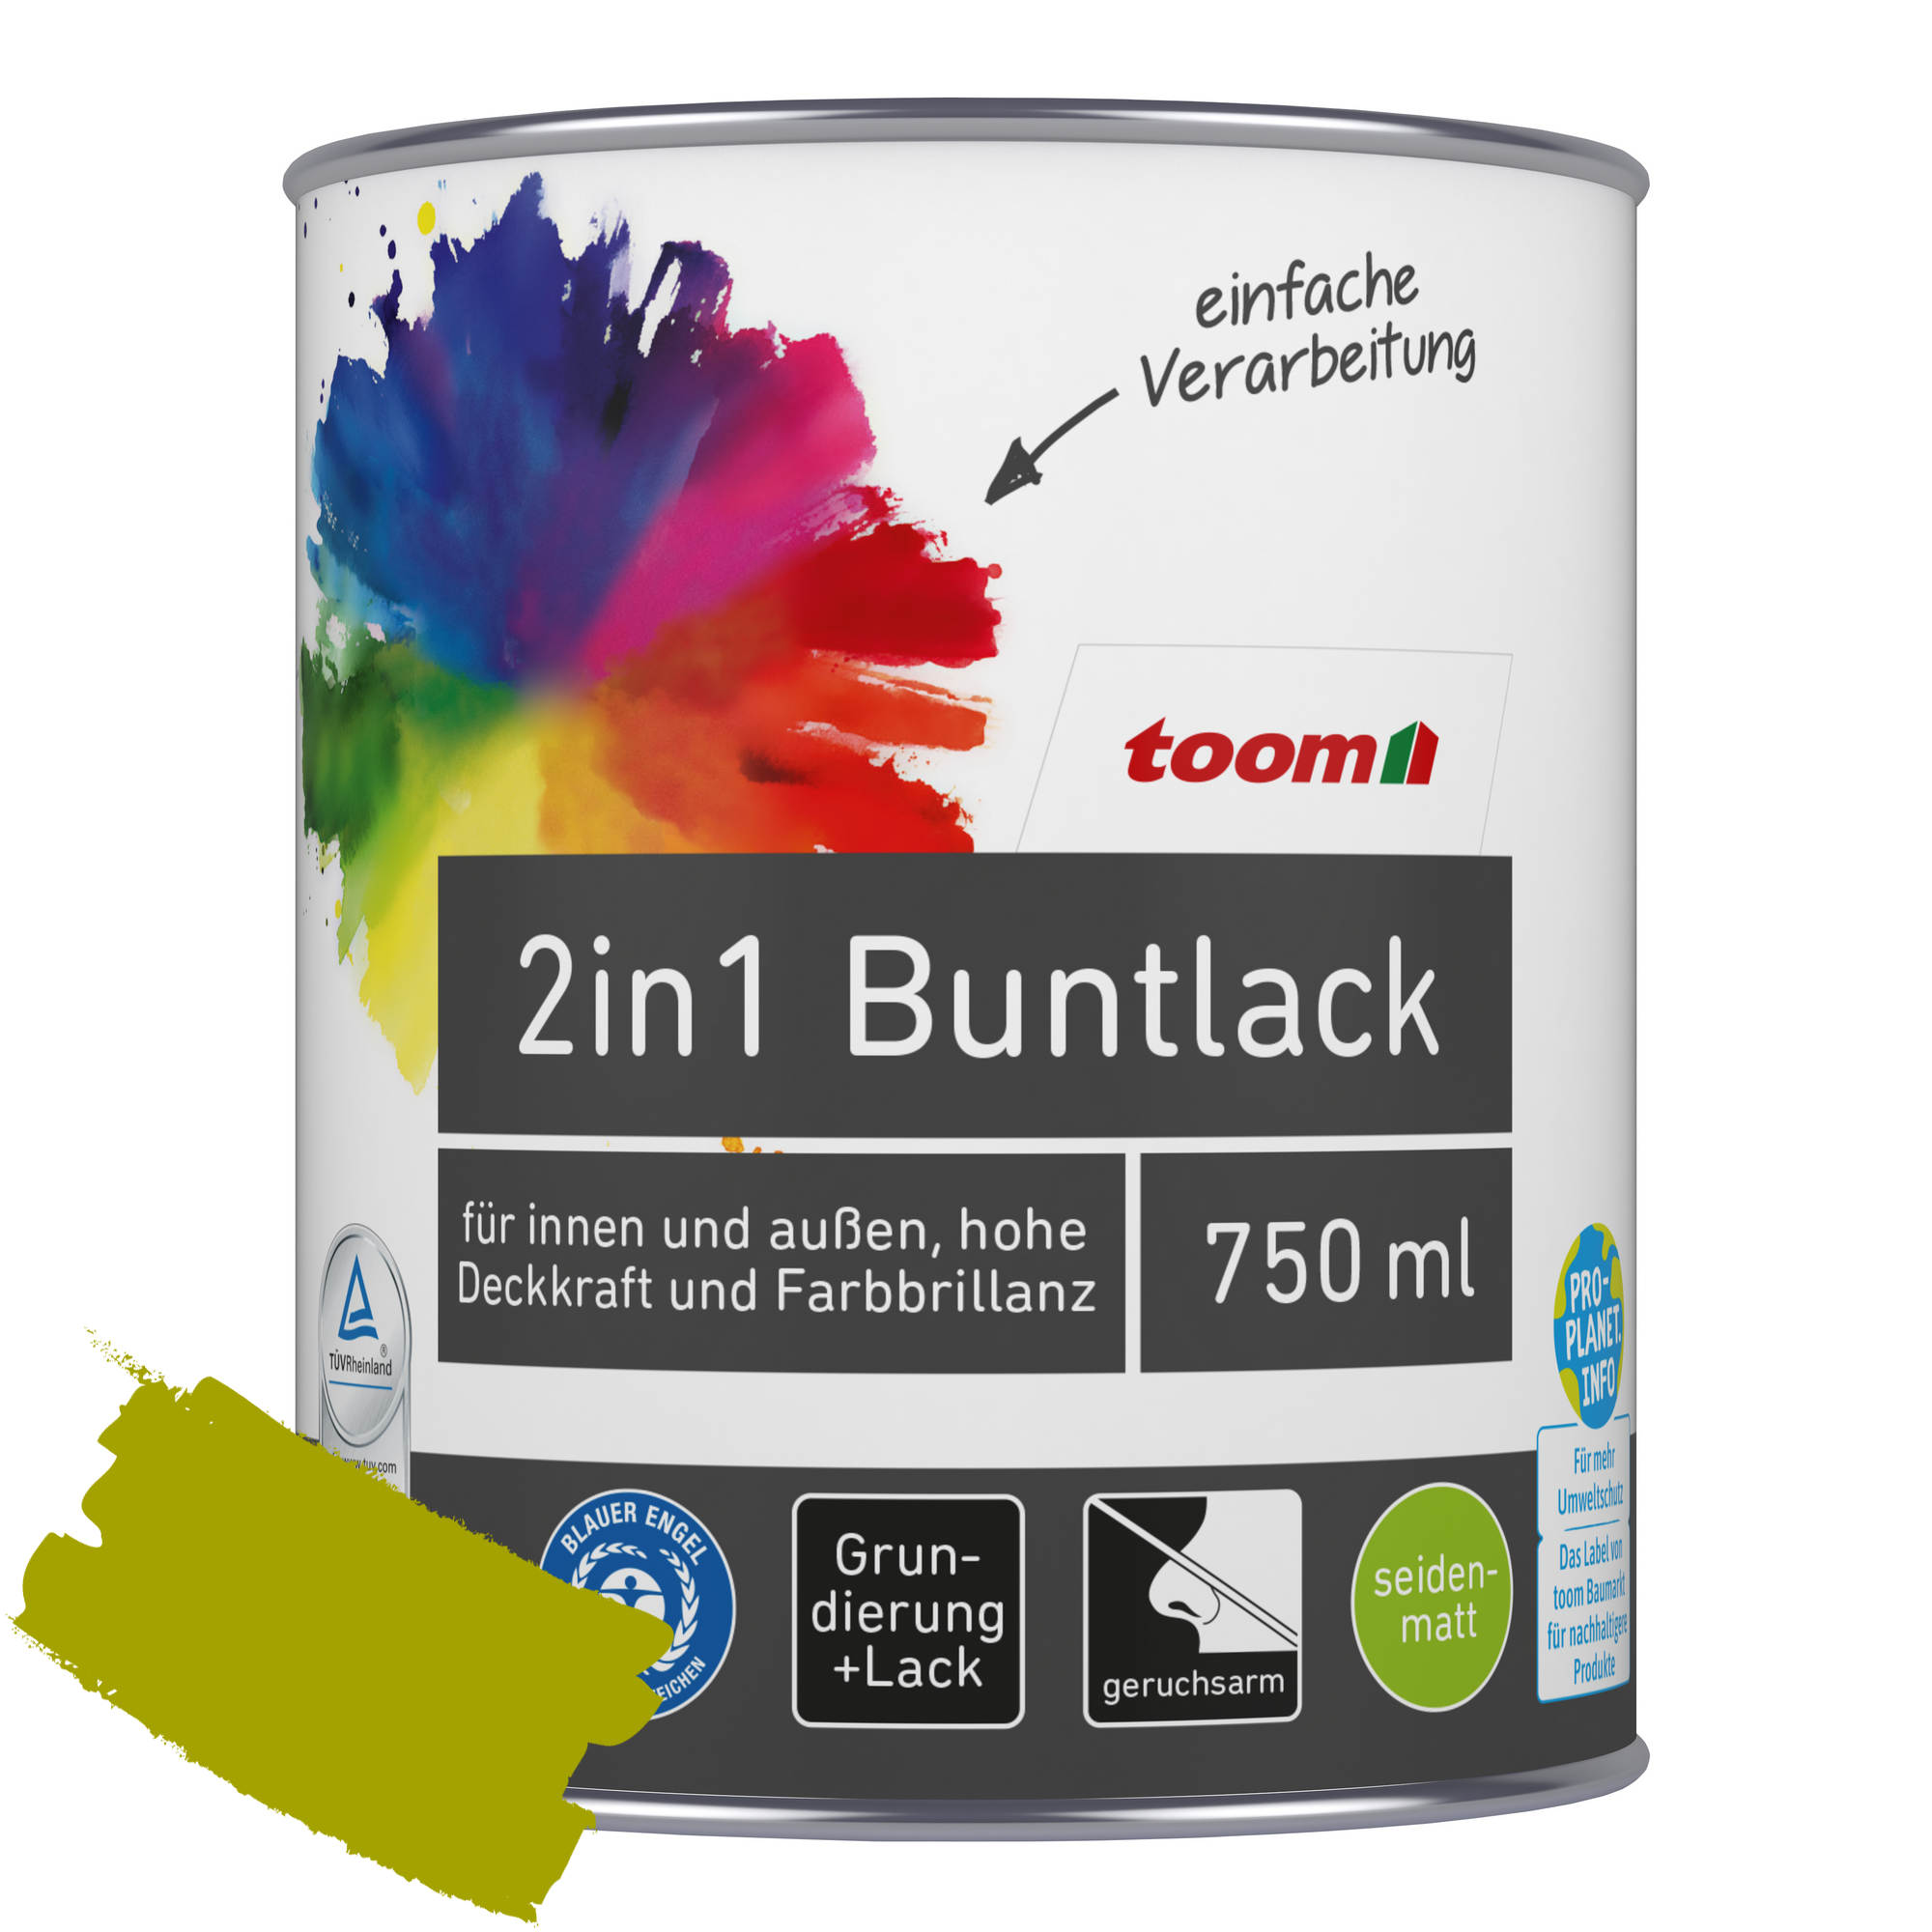 2in1 Buntlack 'Frühlingswiese' limettengrün seidenmatt 750 ml + product picture